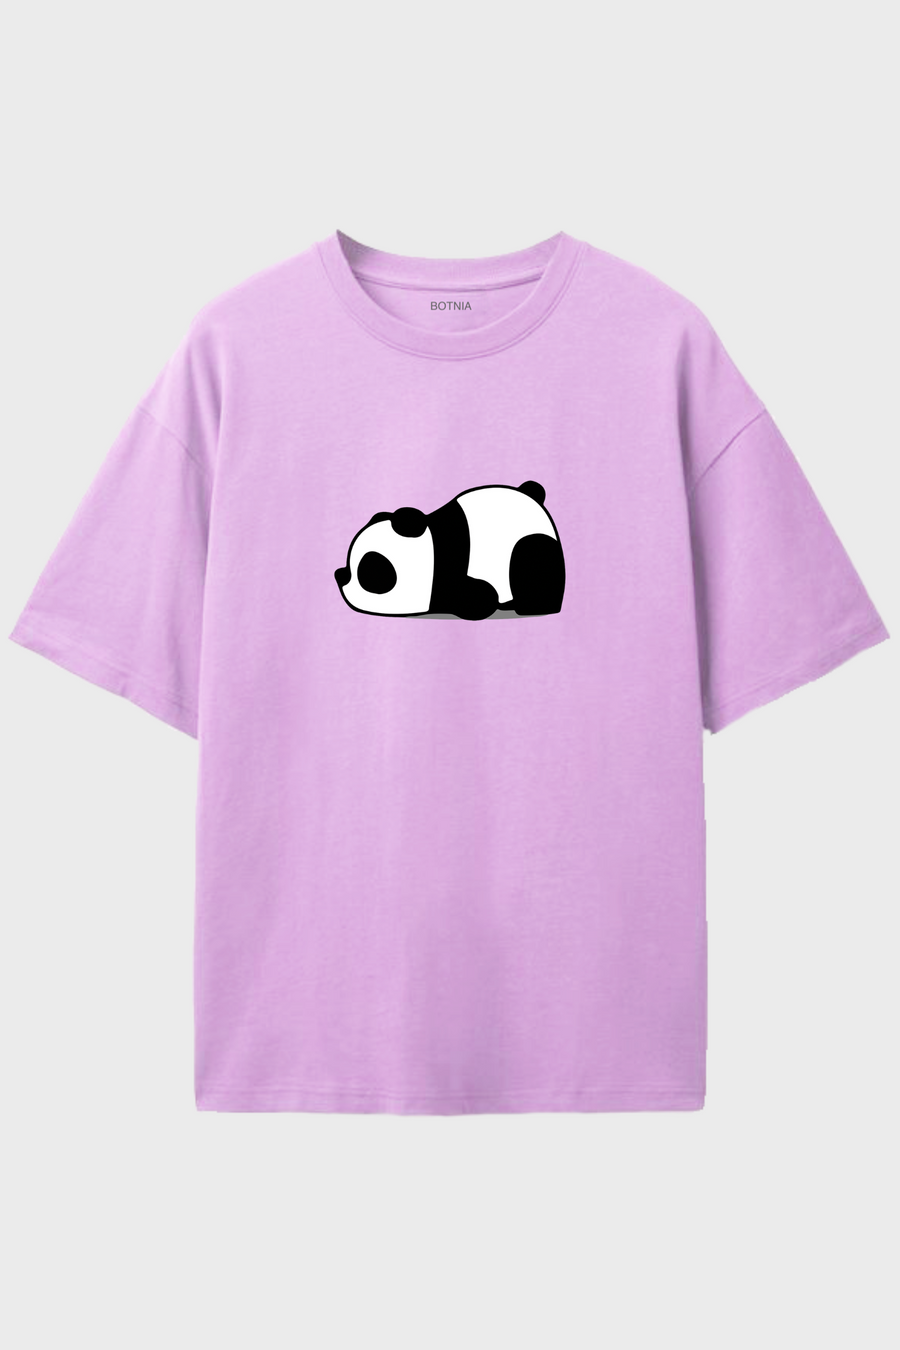 Panda- Oversized t-shirt